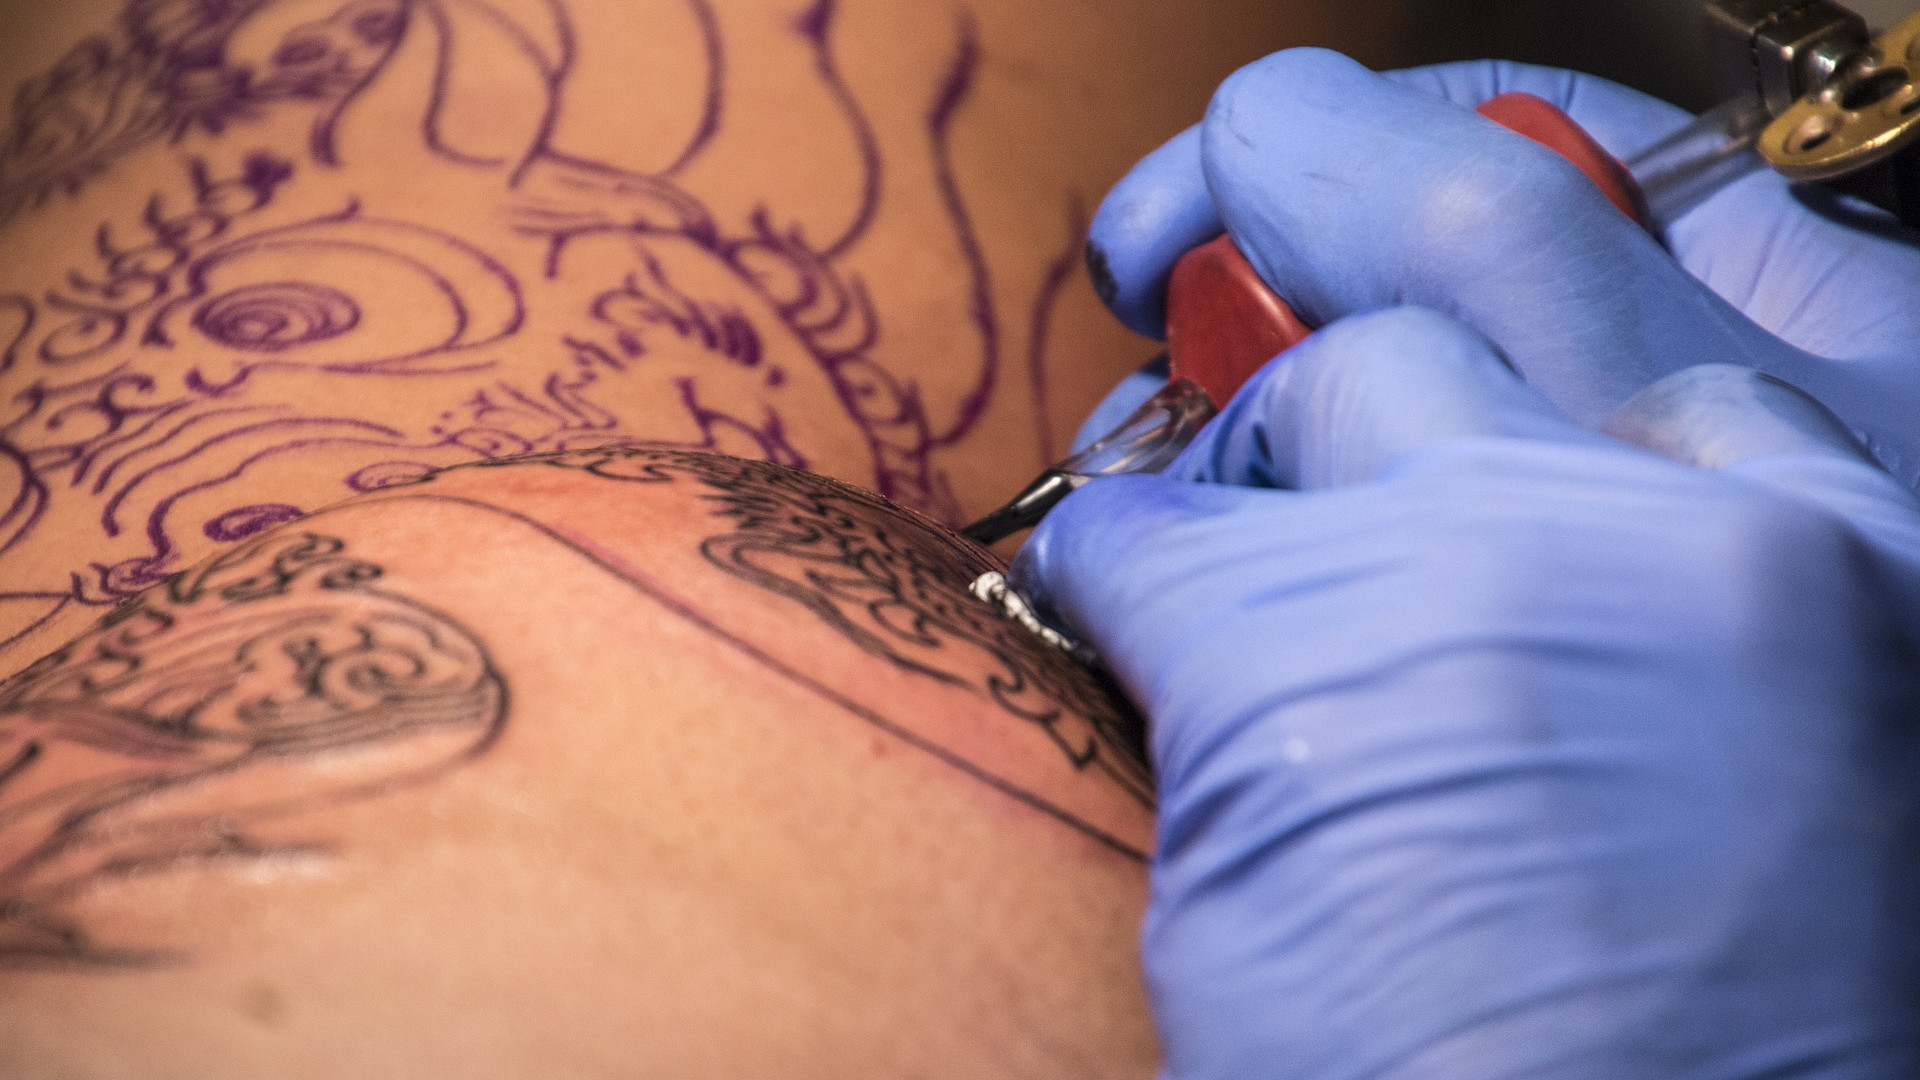 Mulher sobre tatuador preso por assédio: 'Pediu para tirar a calcinha'